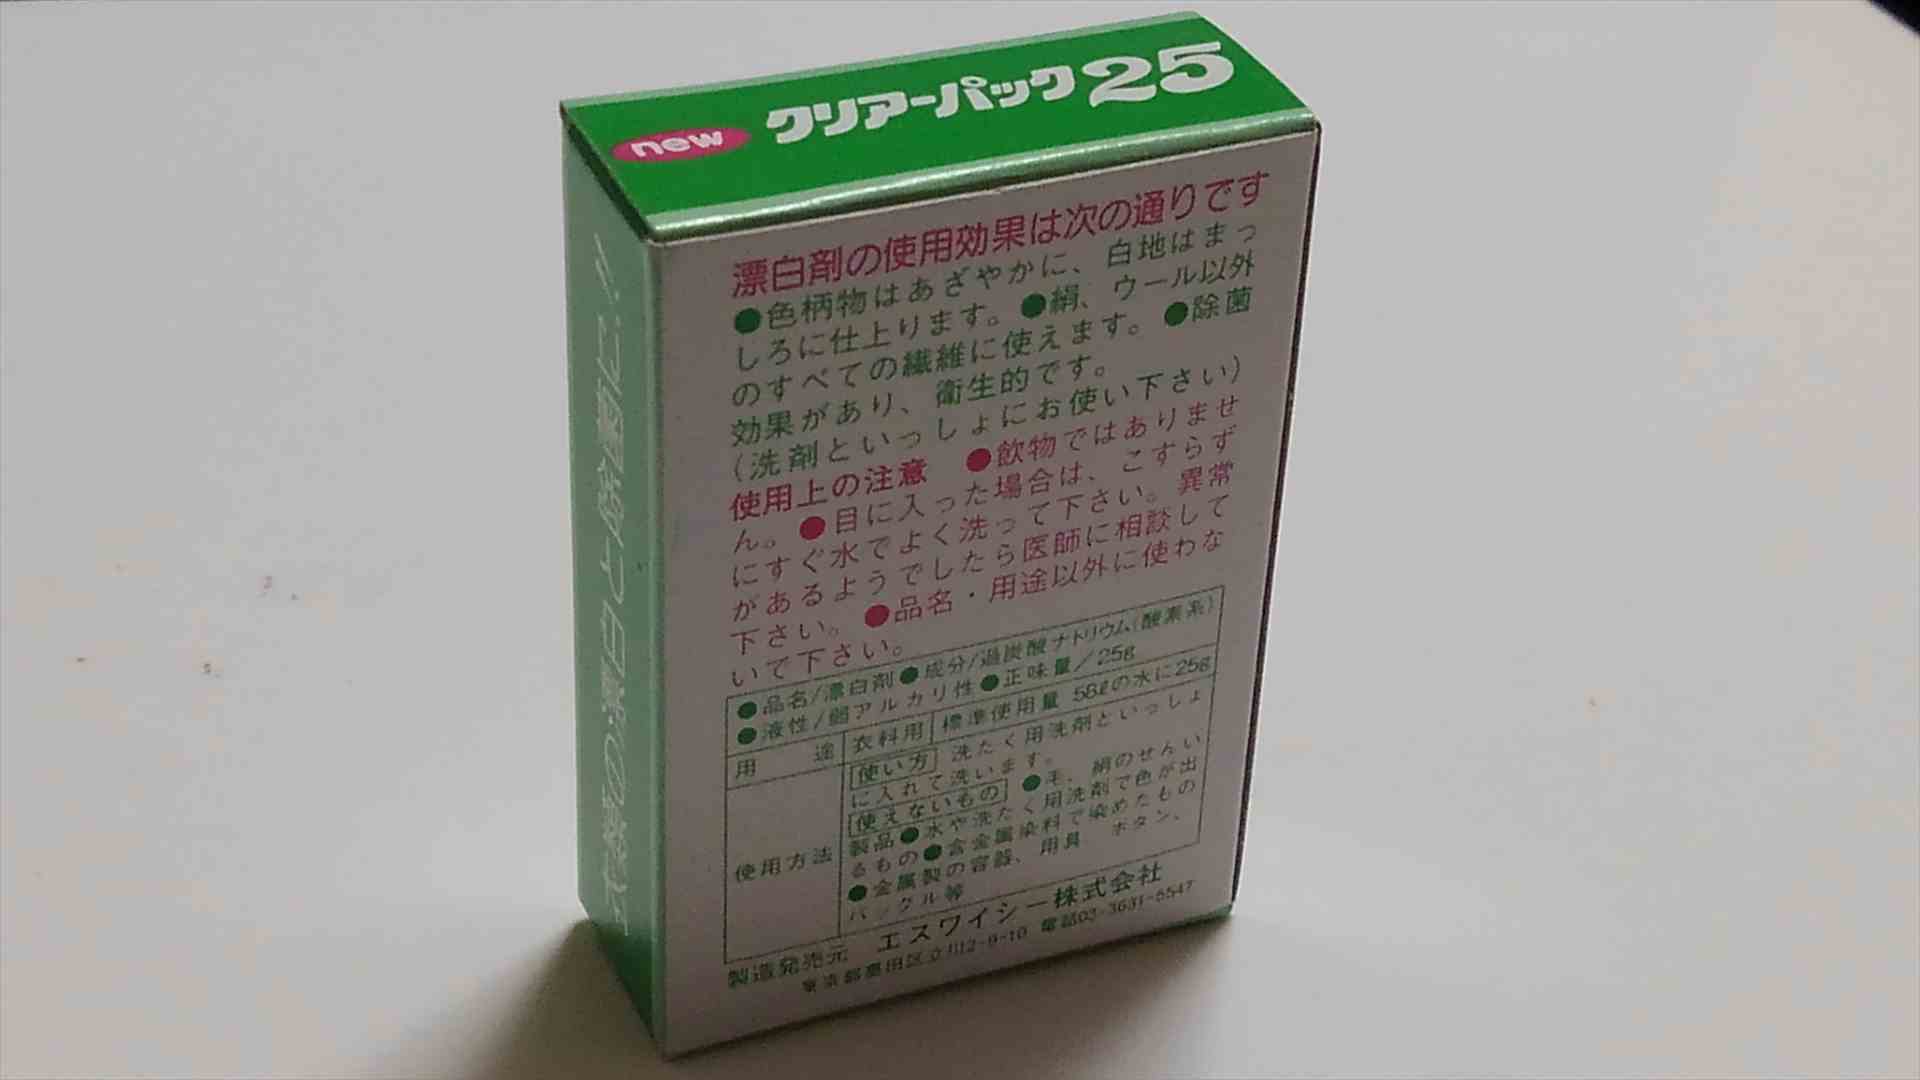 コインランドリー用漂白剤newクリアーパック25(緑箱)